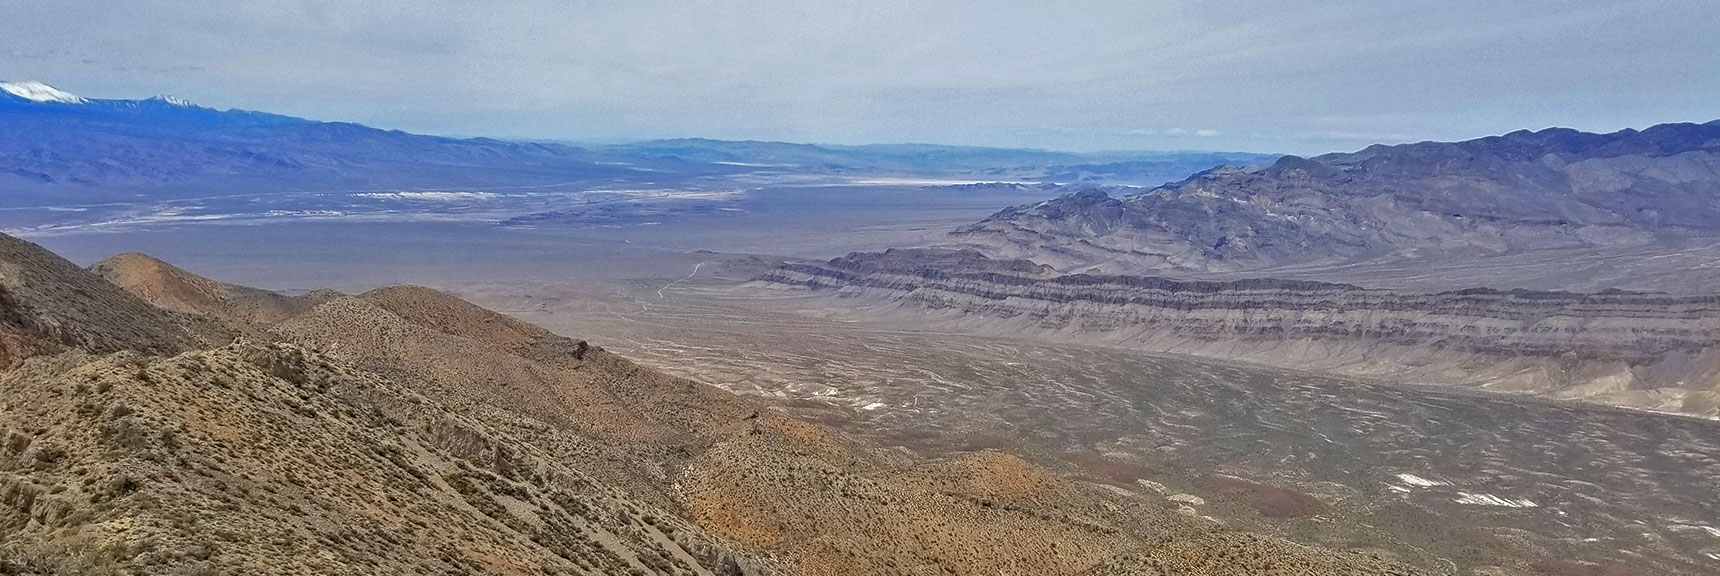 View Northwest From Gass Peak Eastern Summit | Gass Peak Eastern Summit Ultra-marathon Adventure, Nevada